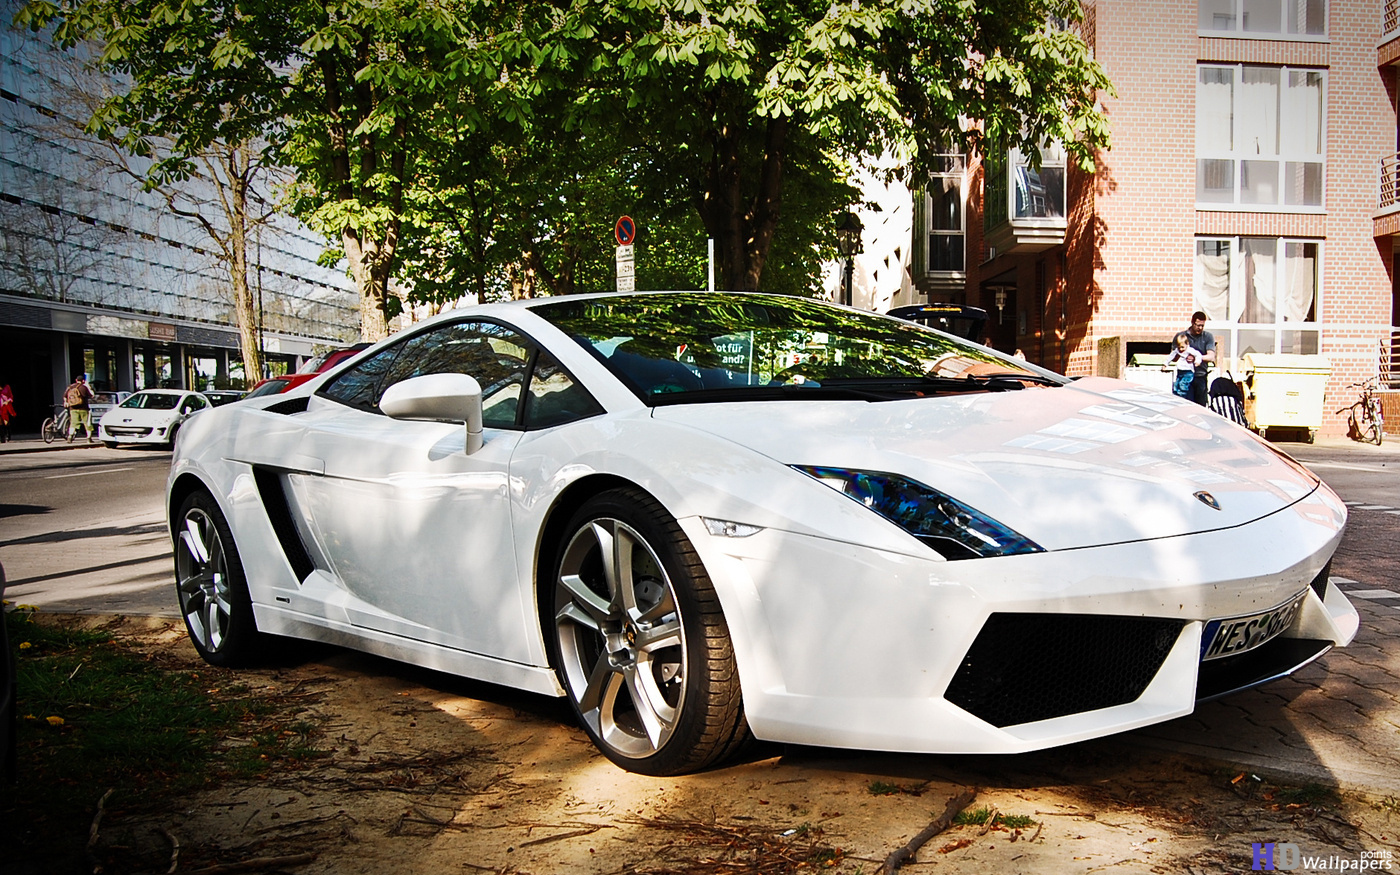 Free download Lamborghini Car images